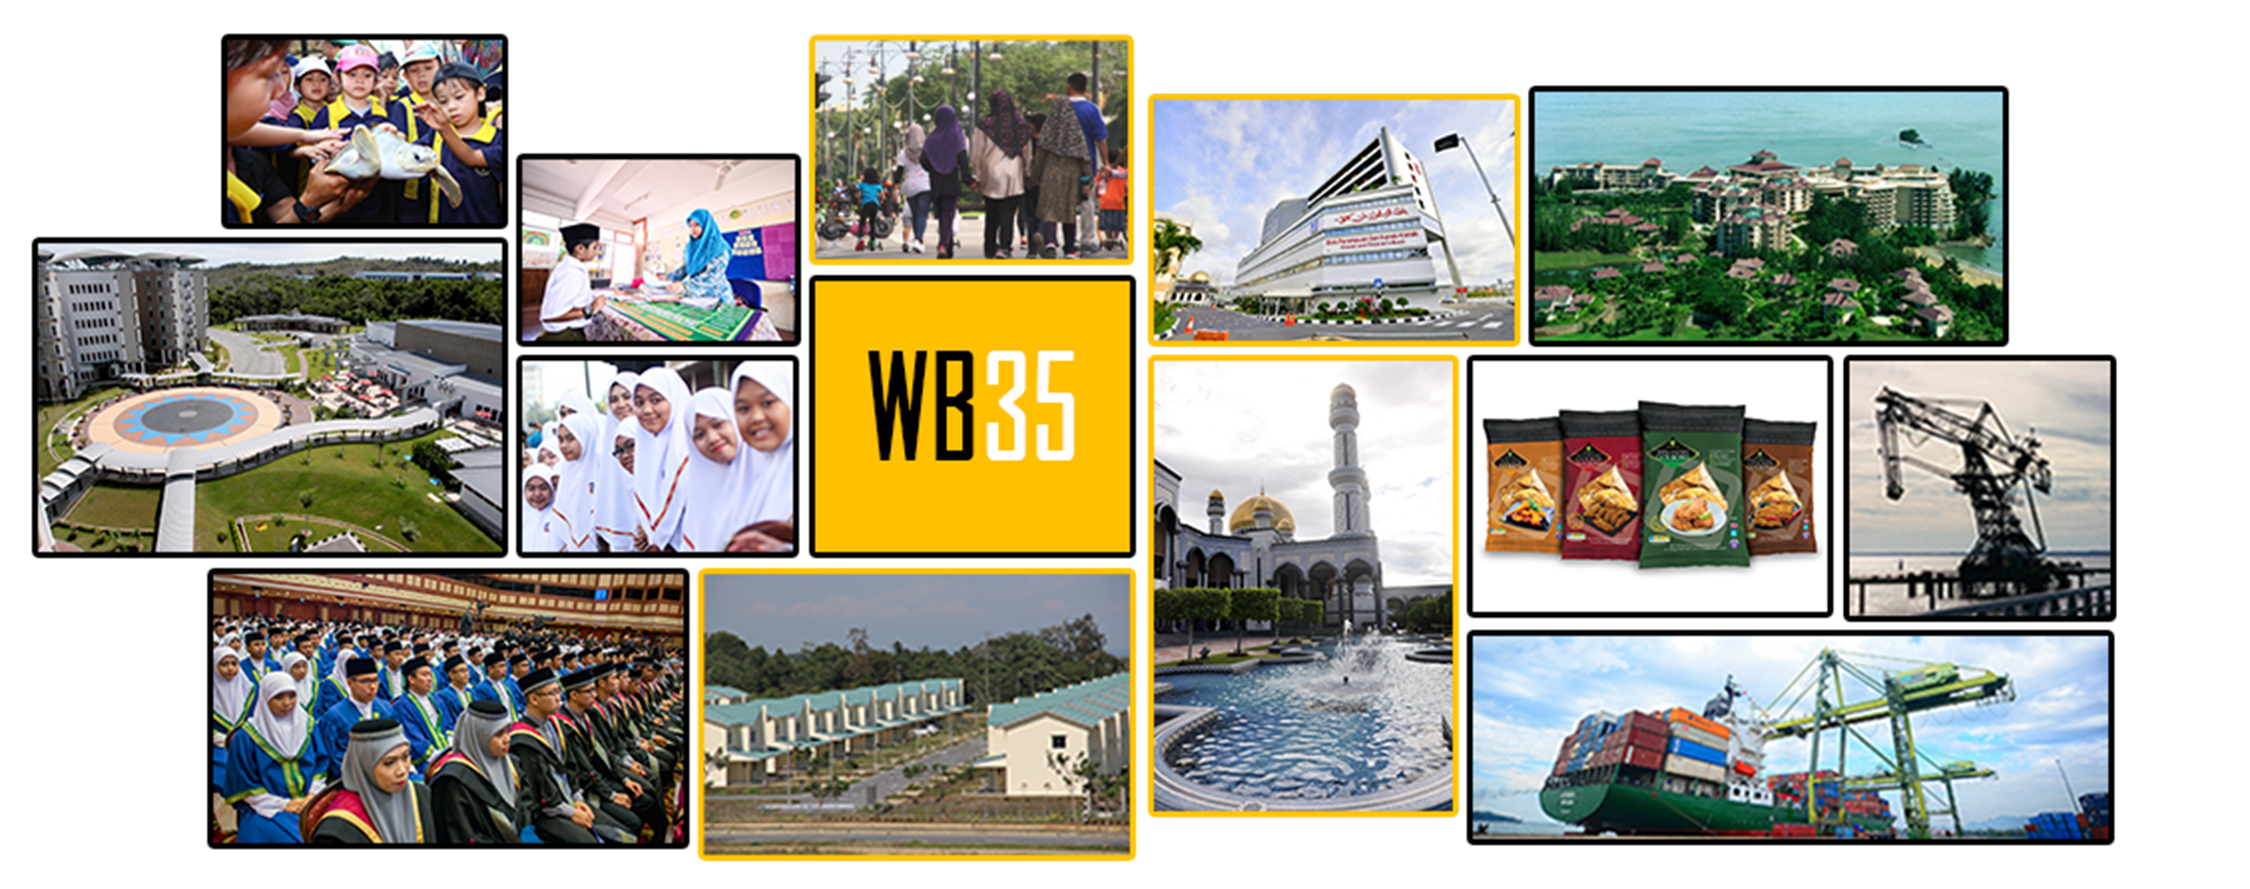 Brunei Vision 2035